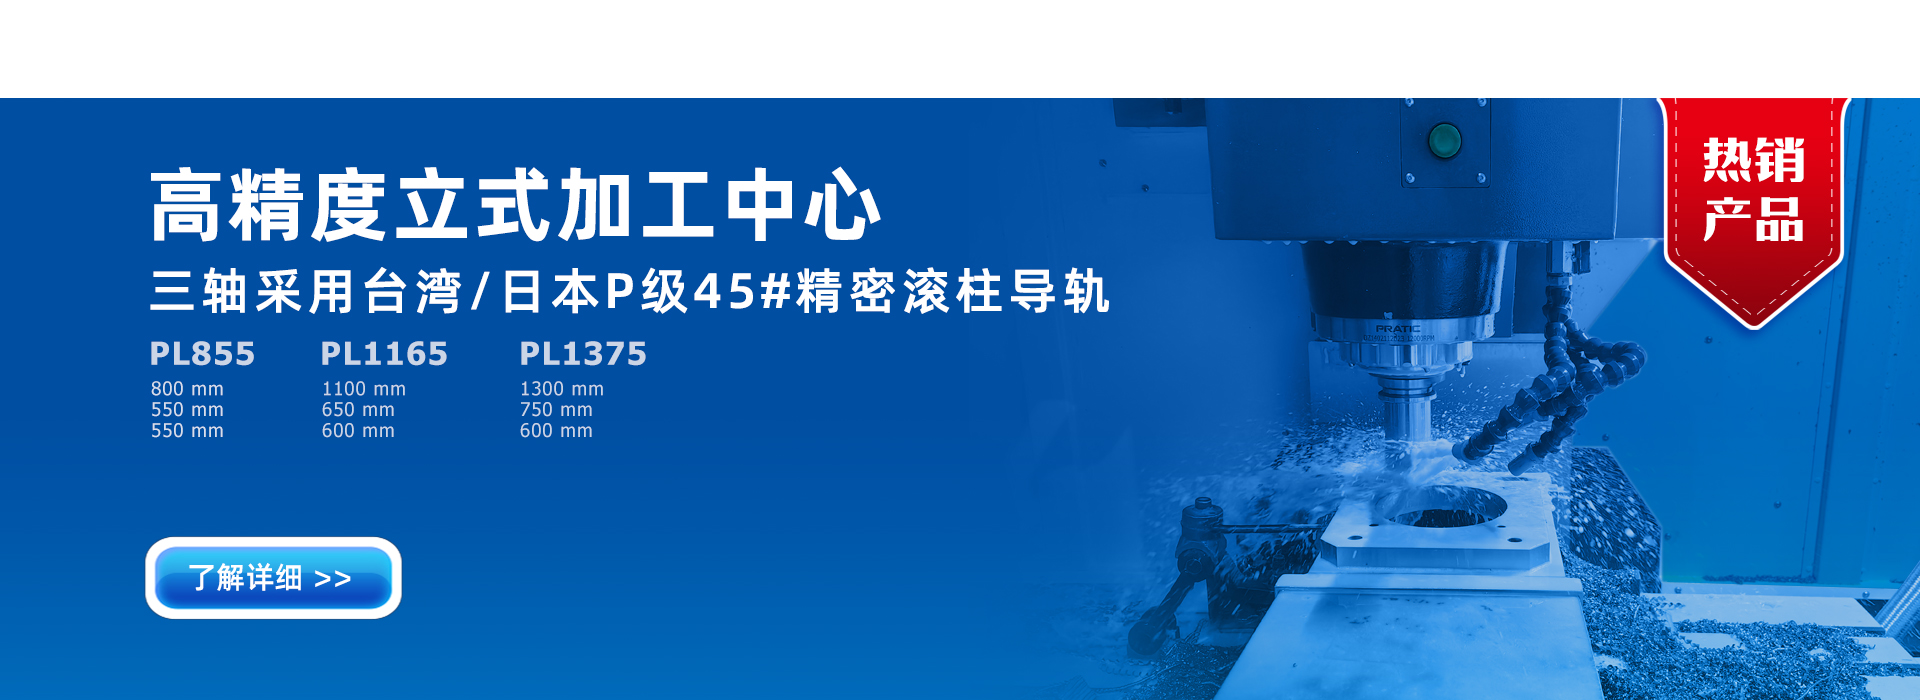 bat365中国官方网站加工中心首页幻灯片